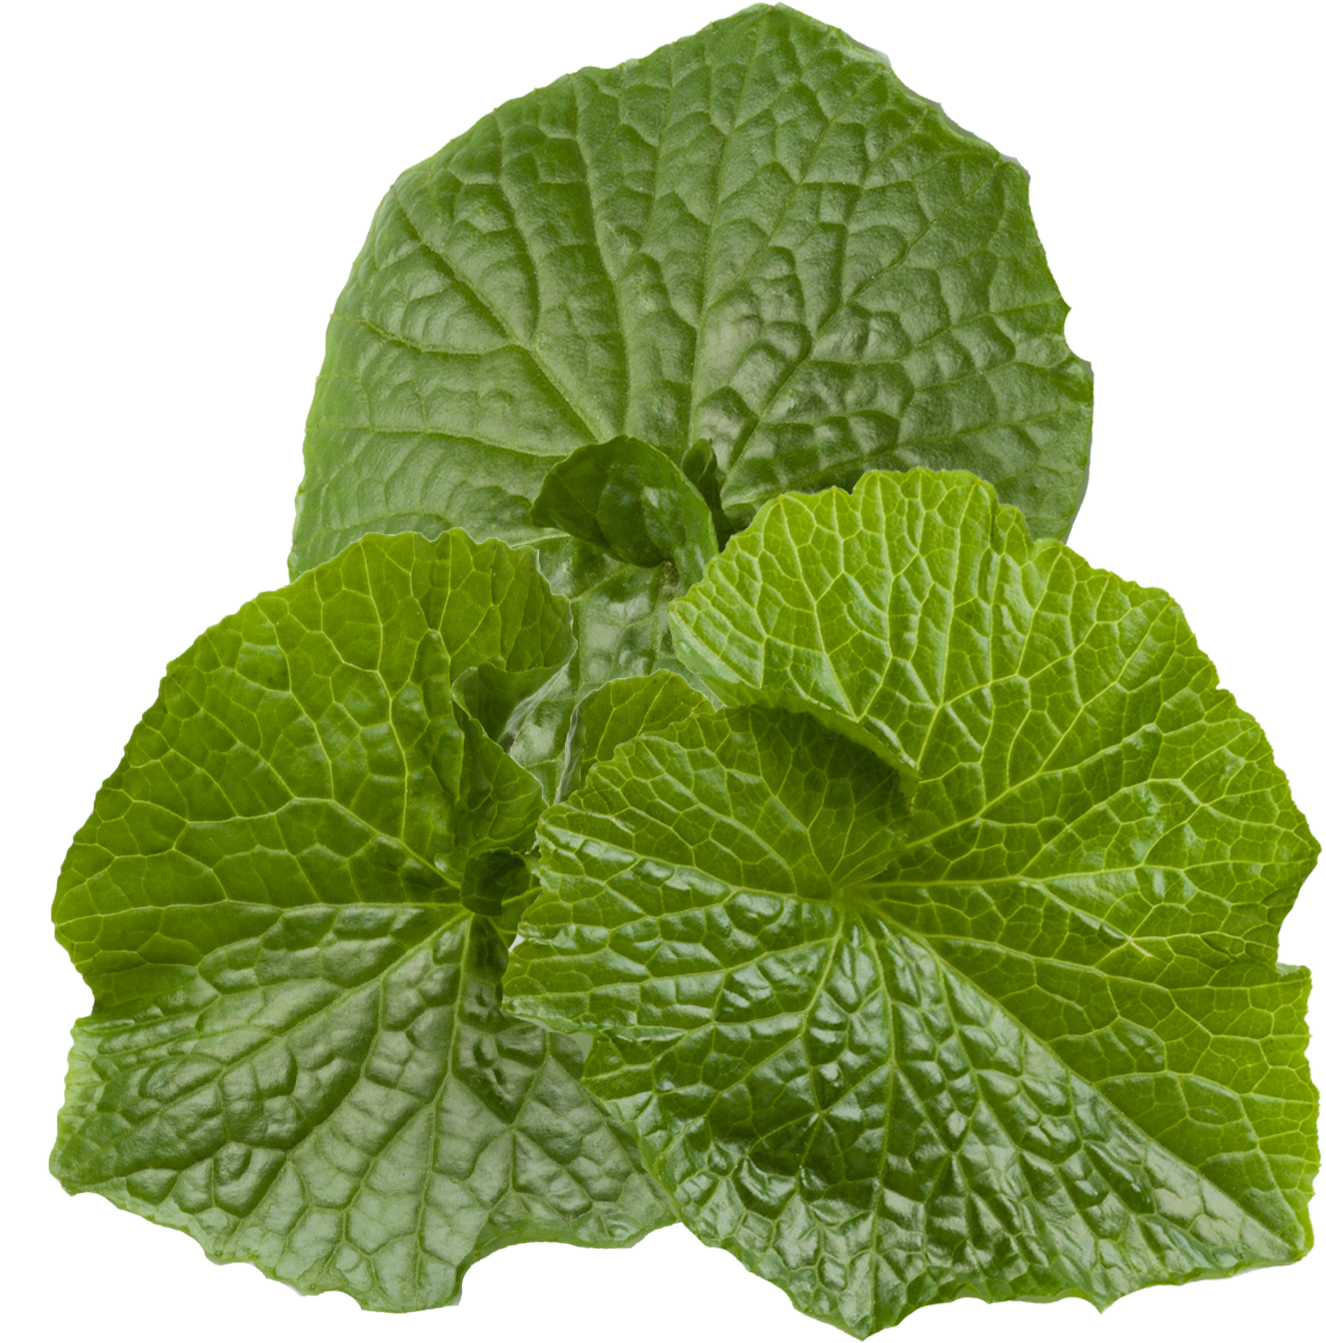 wasabi leaf bundle